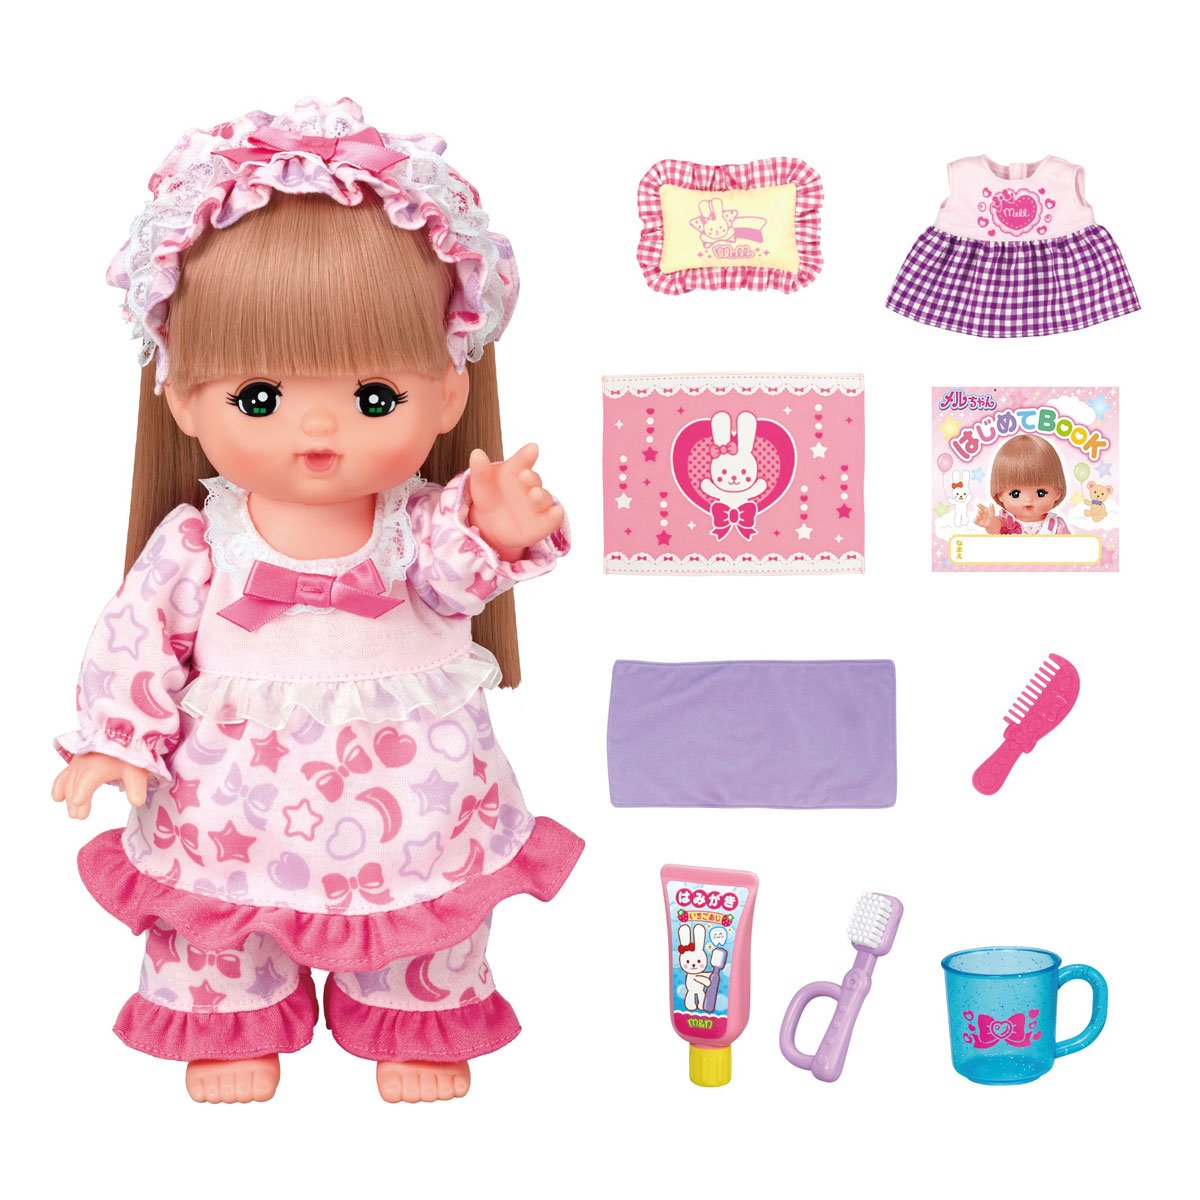 ピンクのロングヘアメルちゃん   人形   本体